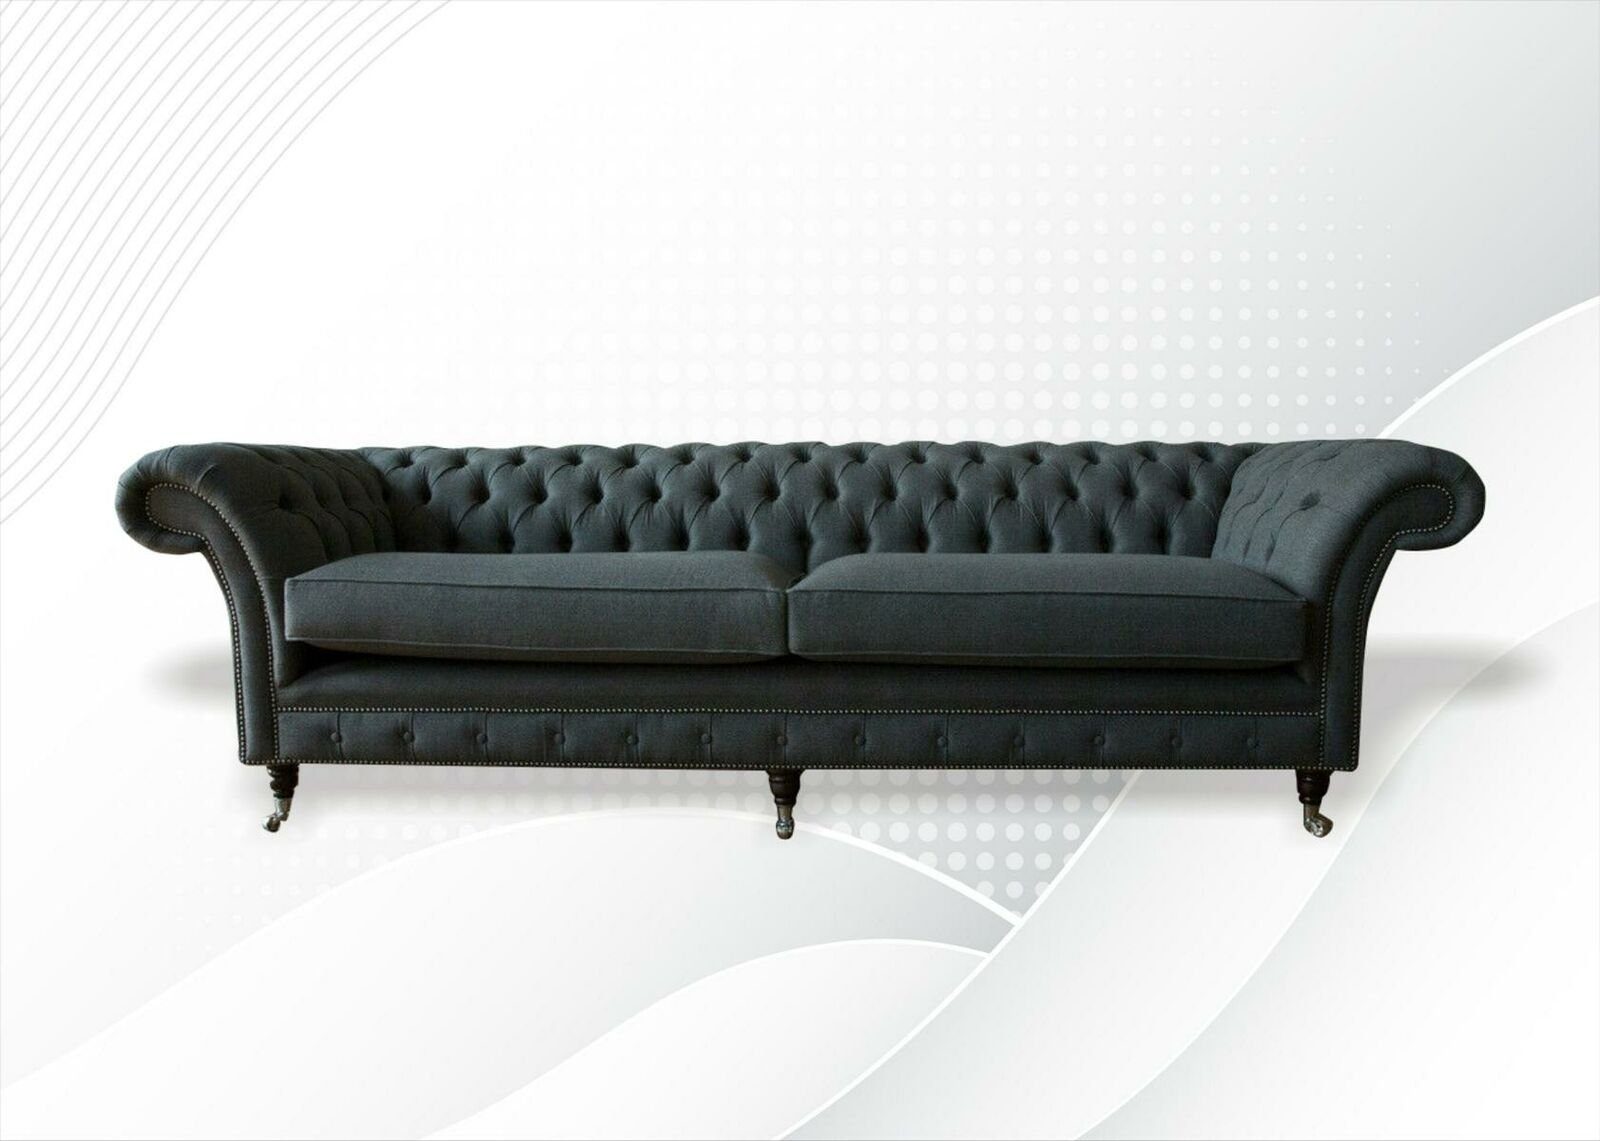 Neue Chesterfield-Sofa Chesterfield luxus Design Couch JVmoebel in Made Europe Möbel, xxl Viersitzer Großer